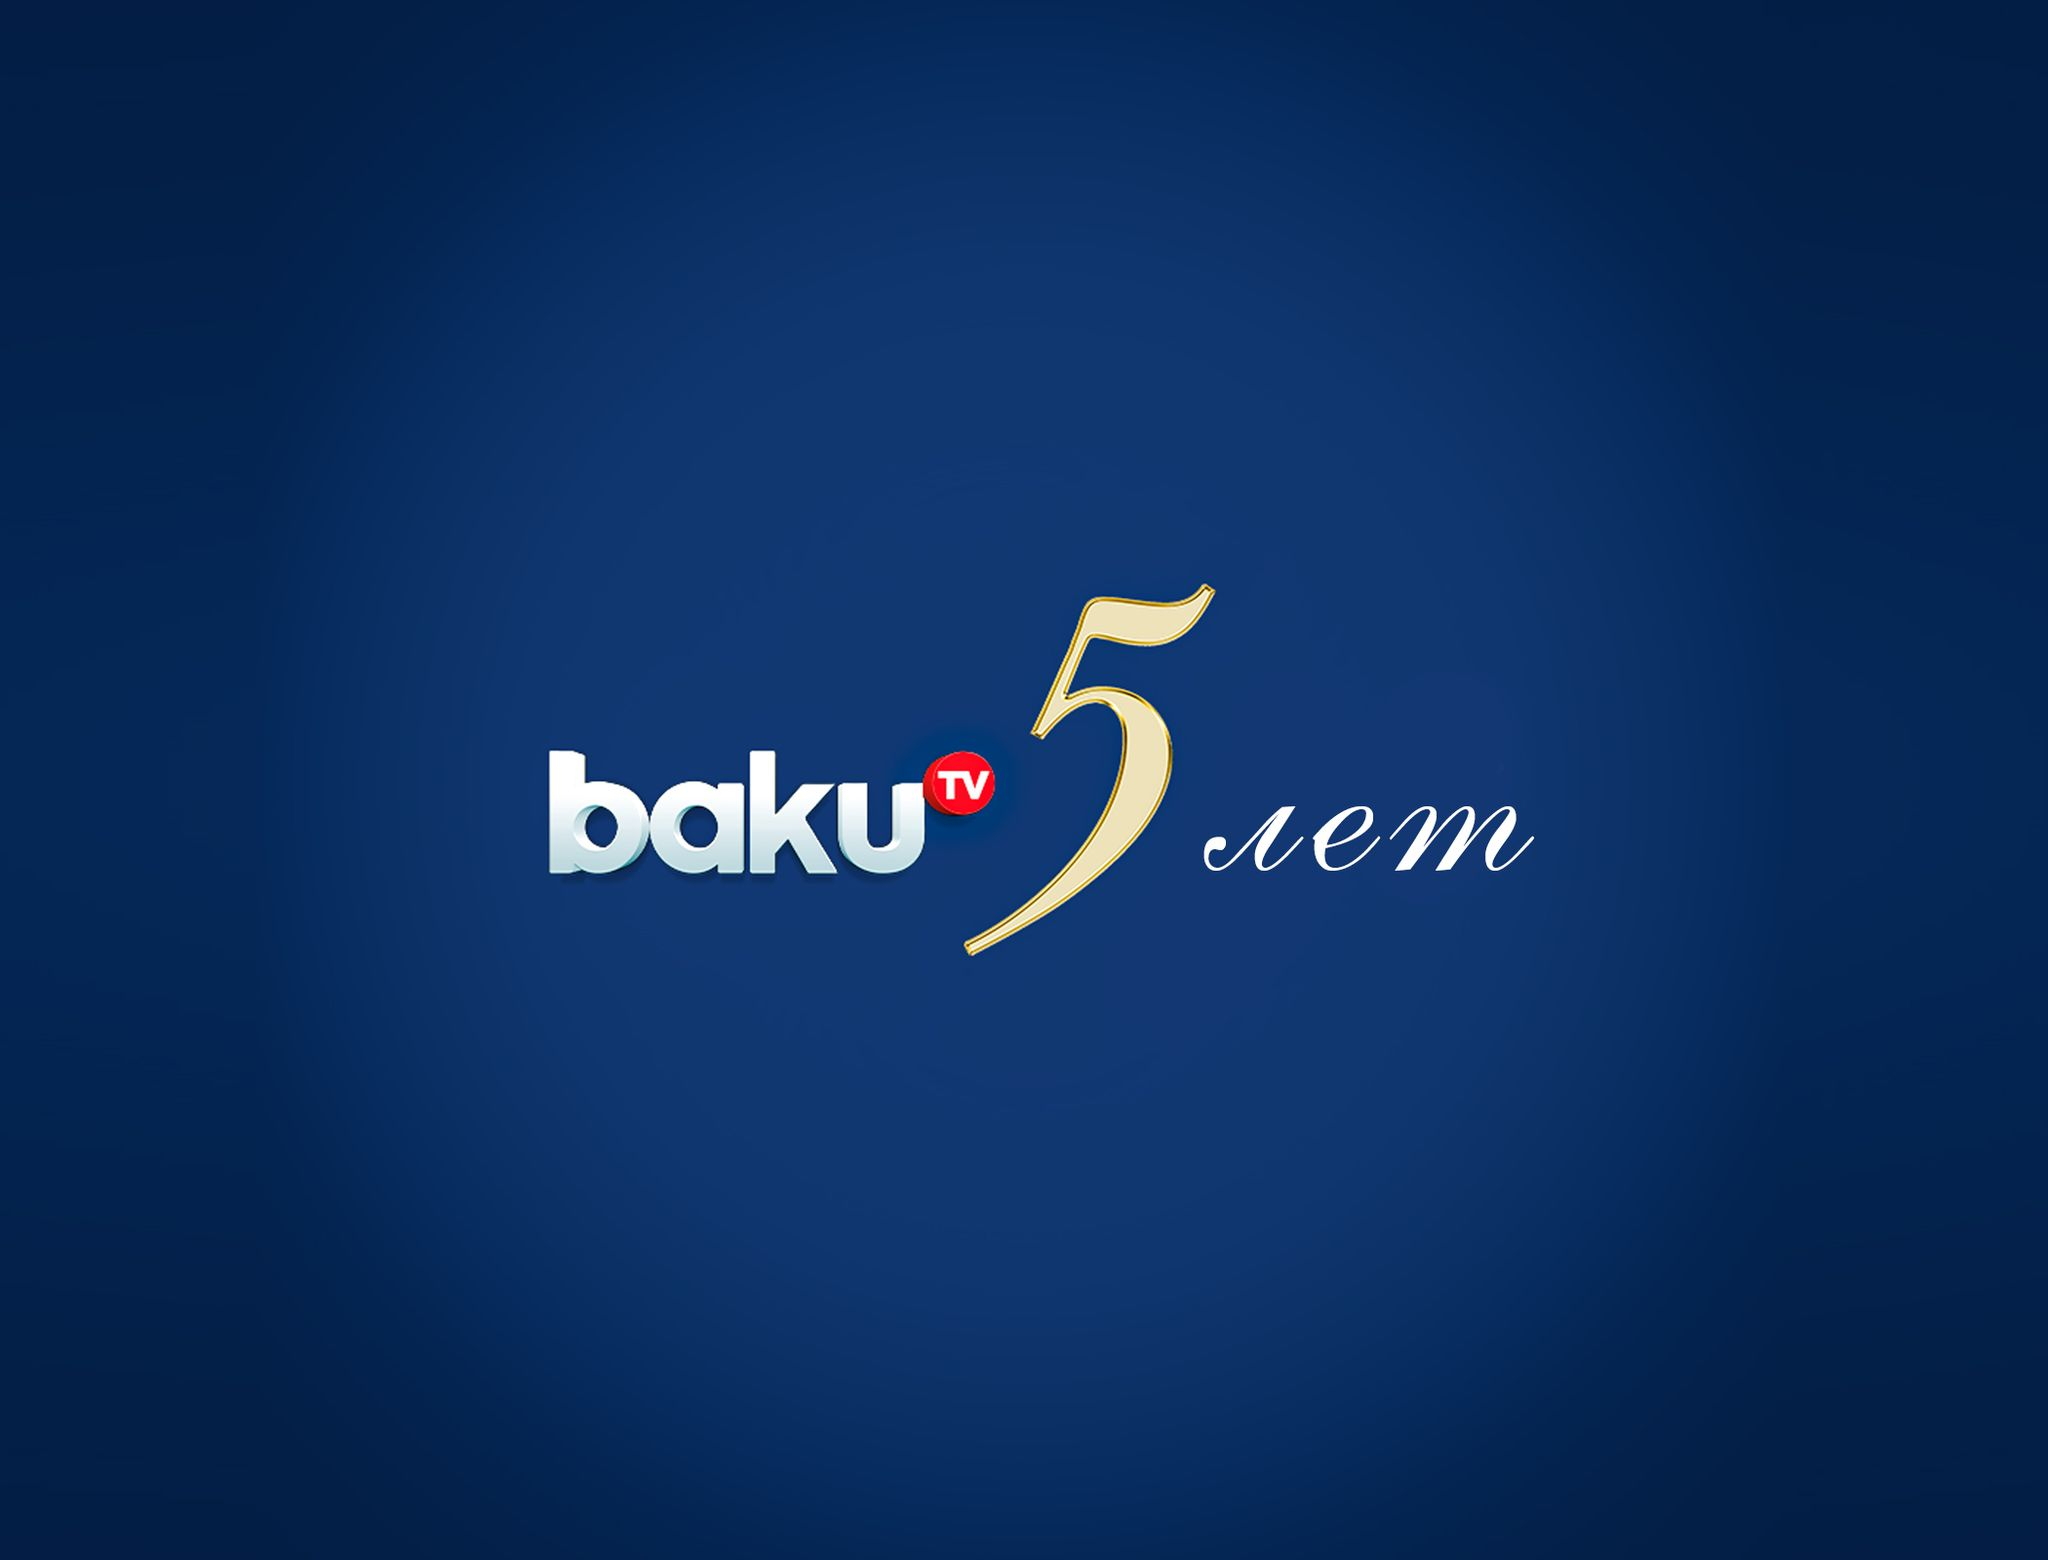 Baku TV logo. Baku TV. Back tv